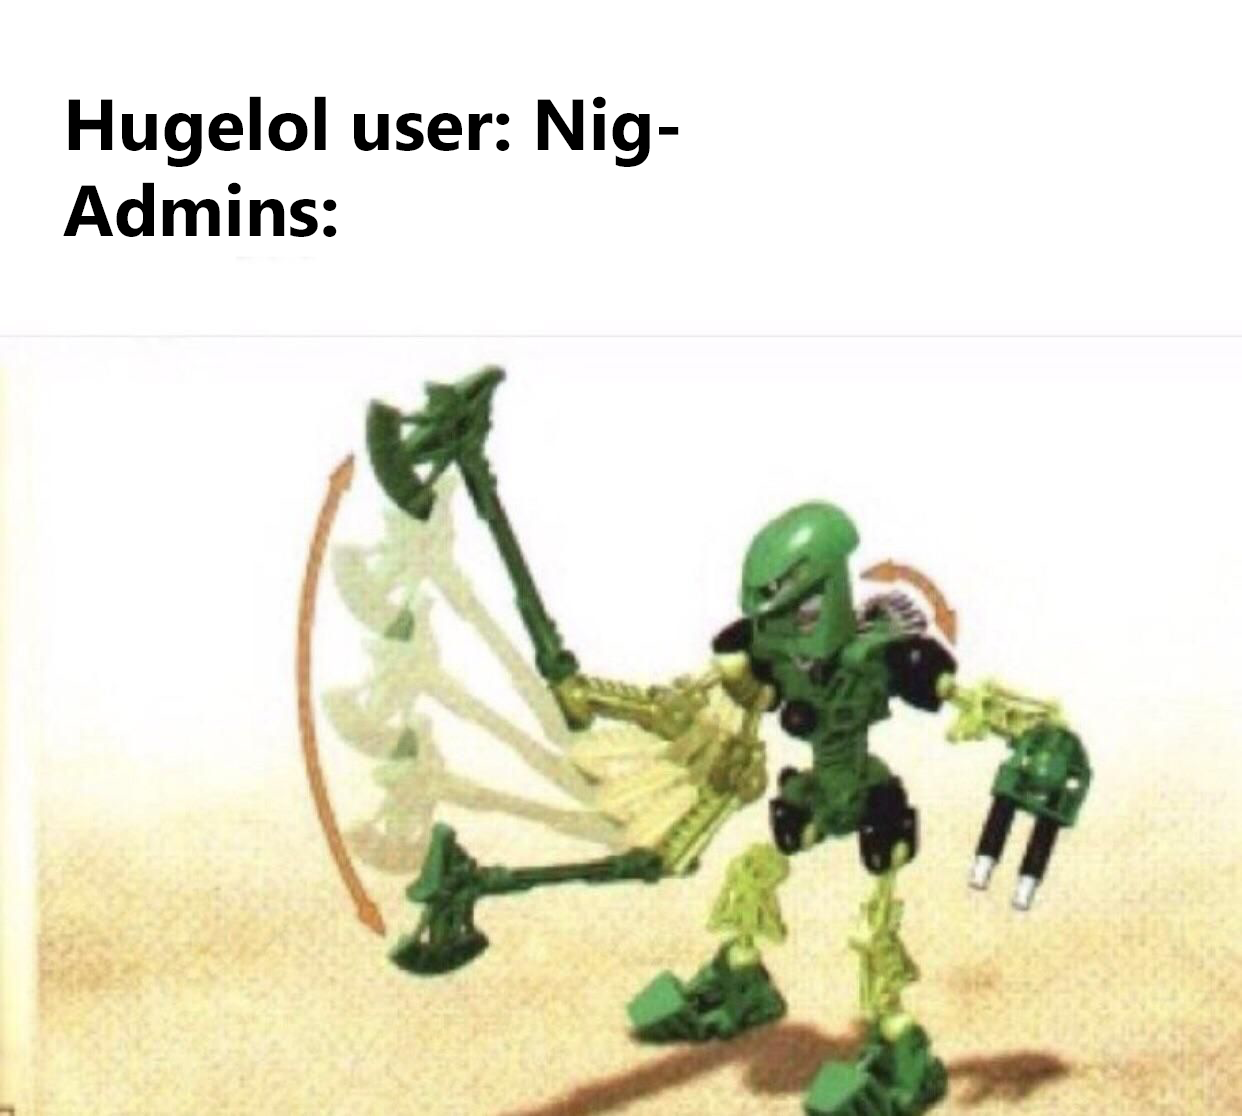 Nig-